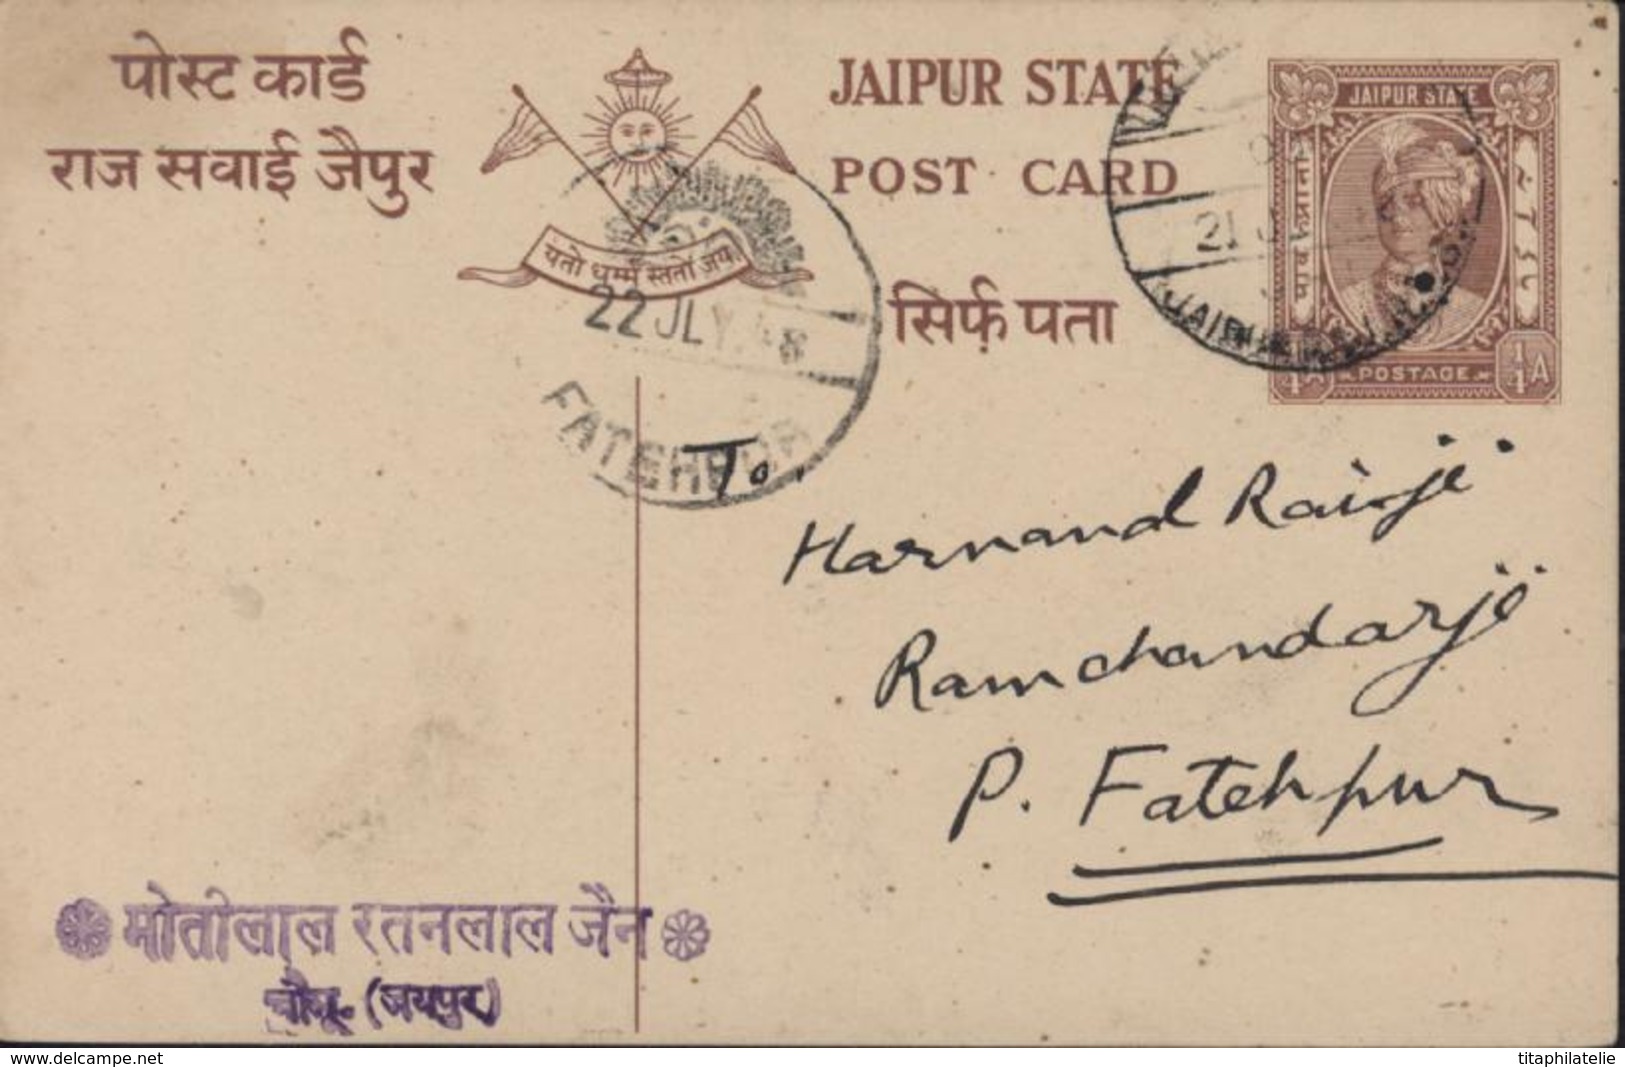 Etat Princier De L'Inde Entier Jaipur State Marron 1.4 Anna Style Timbre C Man Singh CAD Soki Fatehpur 22 July 1948 - Jaipur